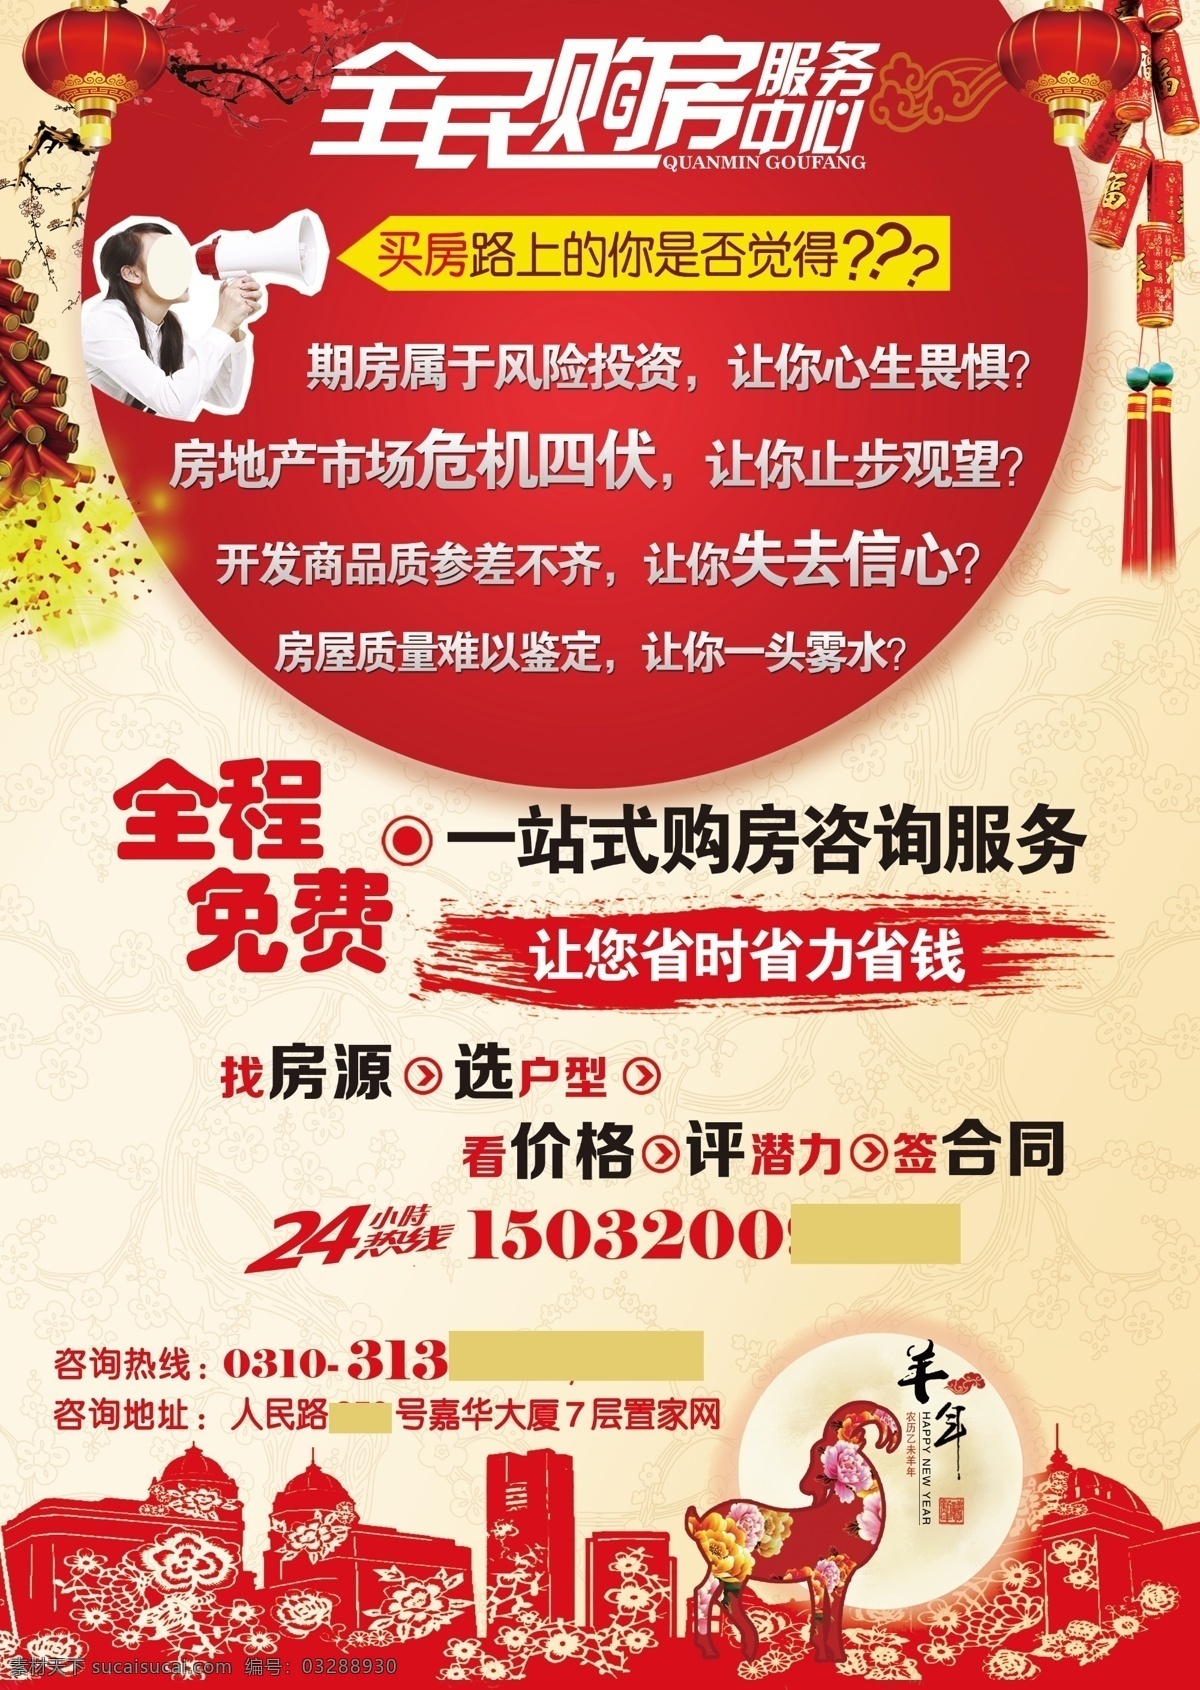 中国 风 春节 宣传单 中国风 鞭炮 灯笼 红梅 羊年 剪纸高楼 热线 喇叭 拿喇叭女生